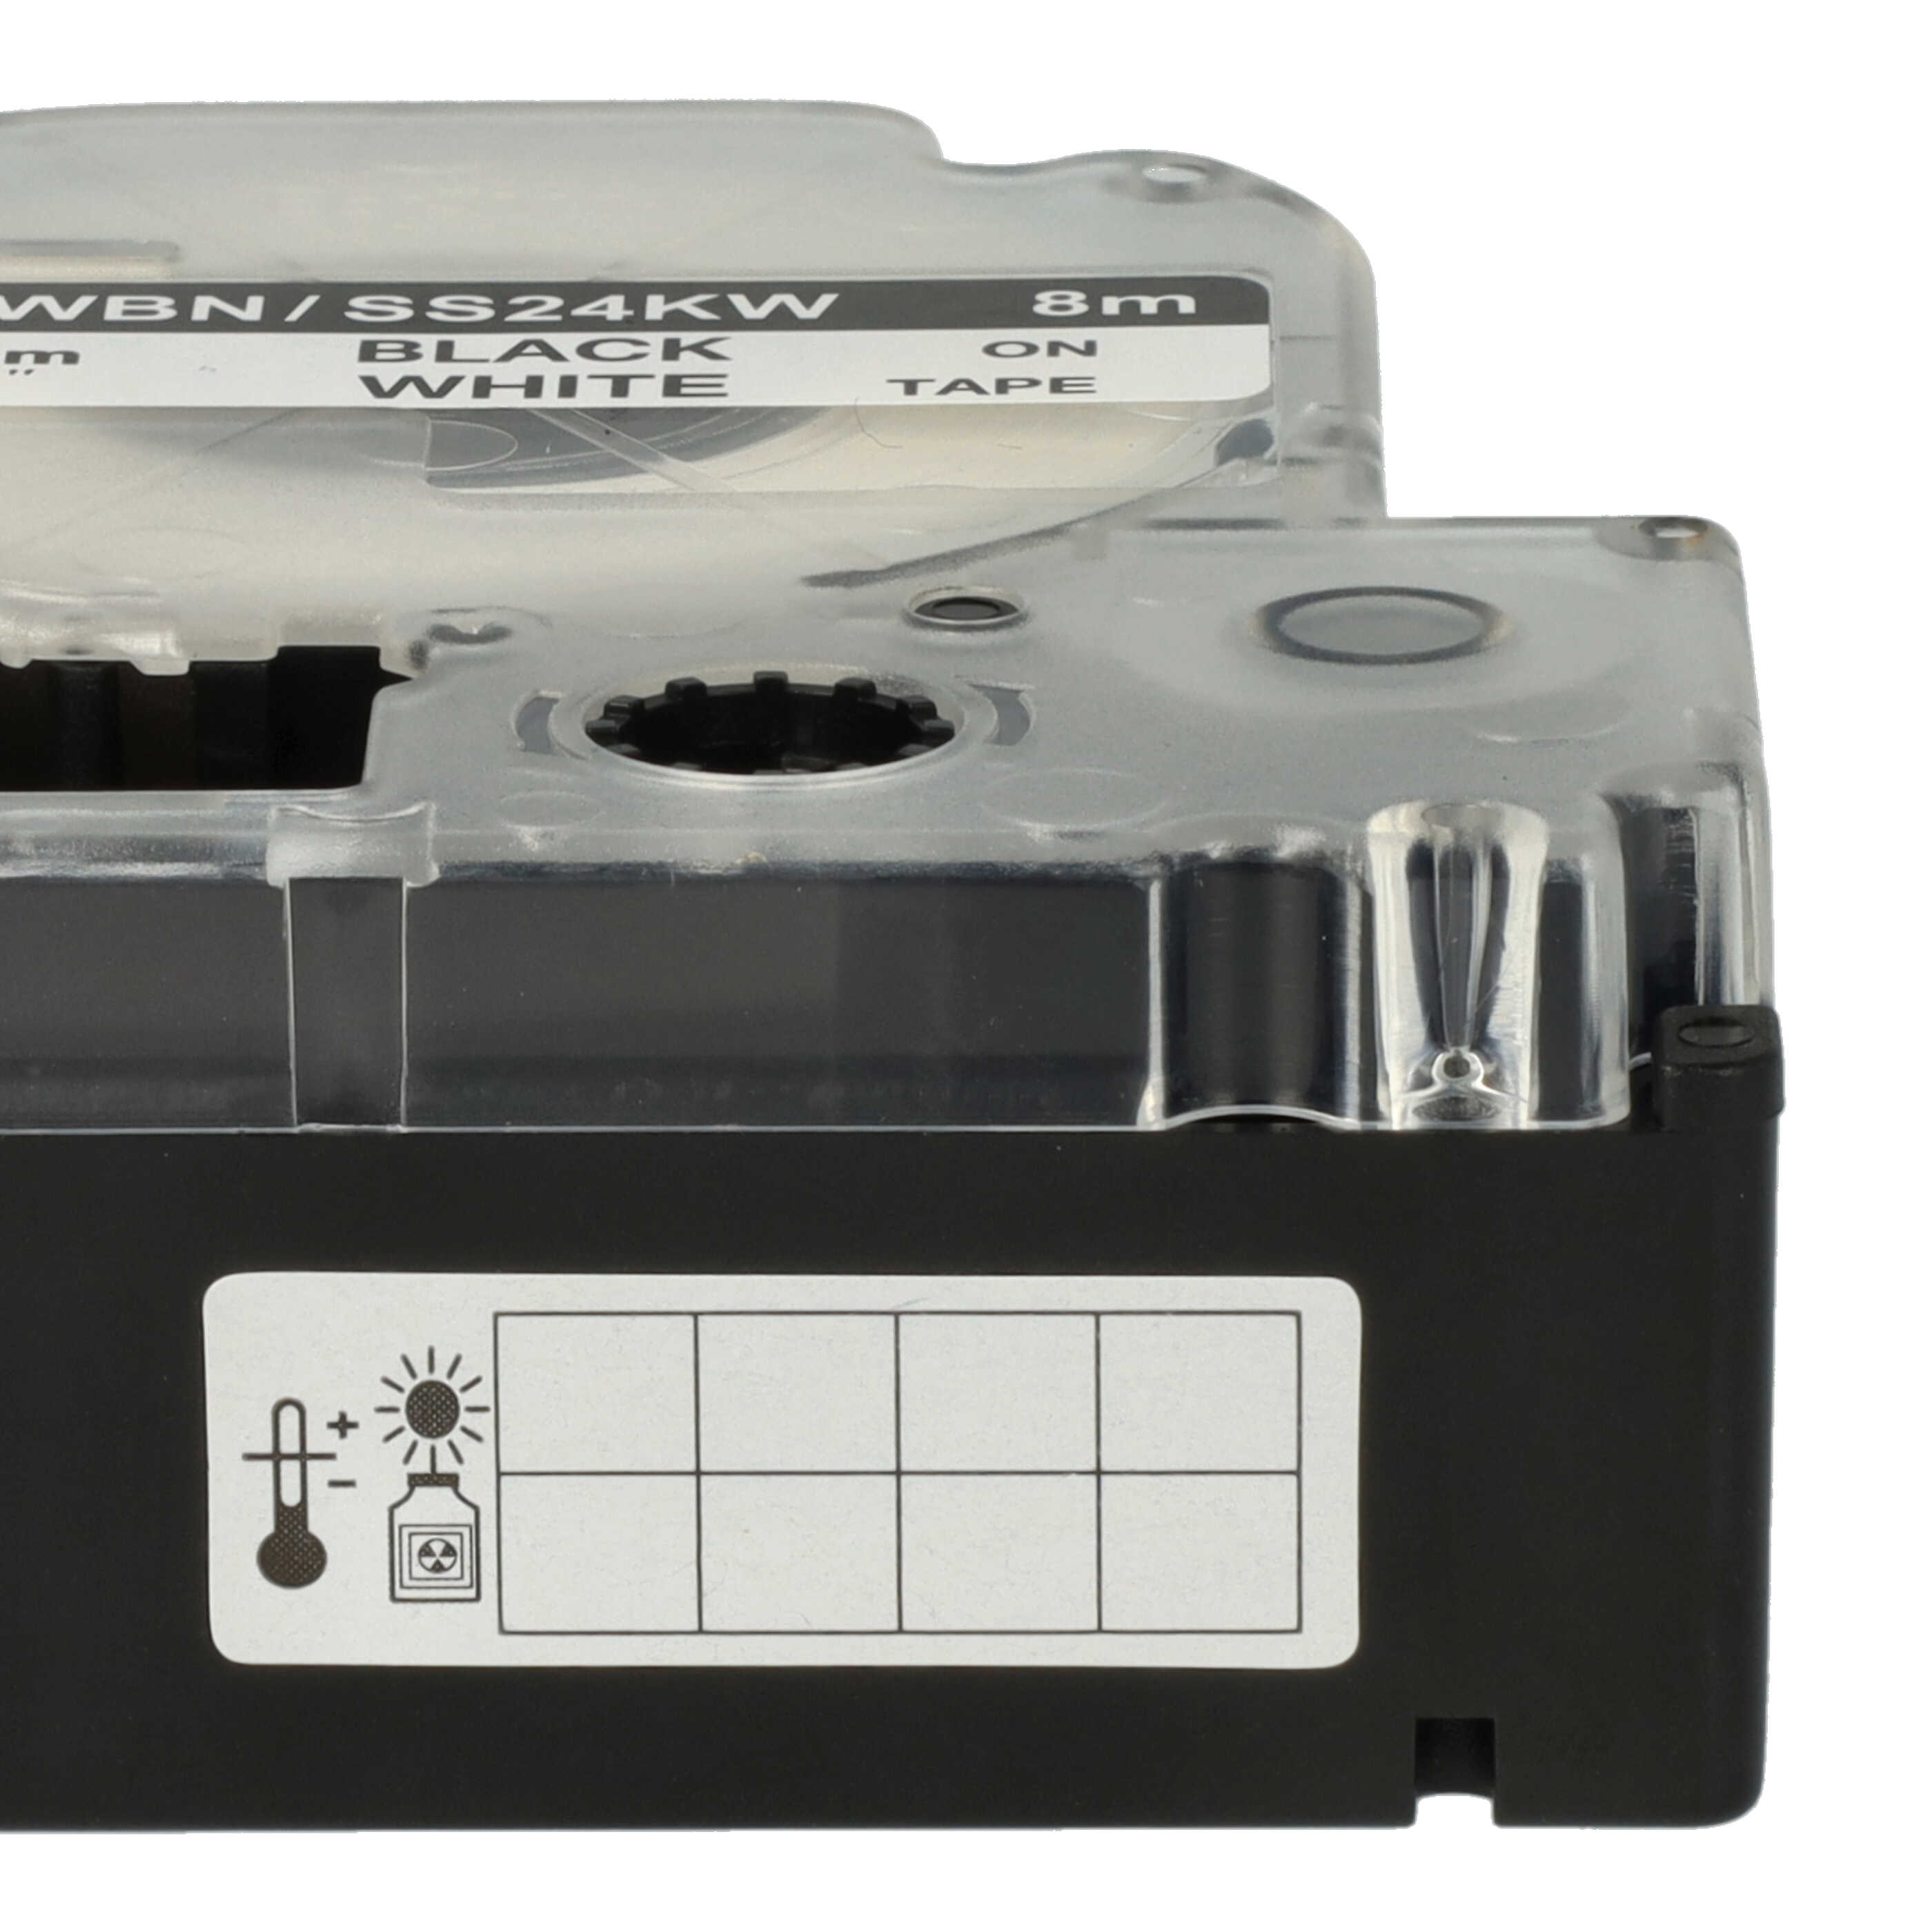 5x Cassettes à ruban remplacent Epson LC-6WBN - 24mm lettrage Noir ruban Blanc